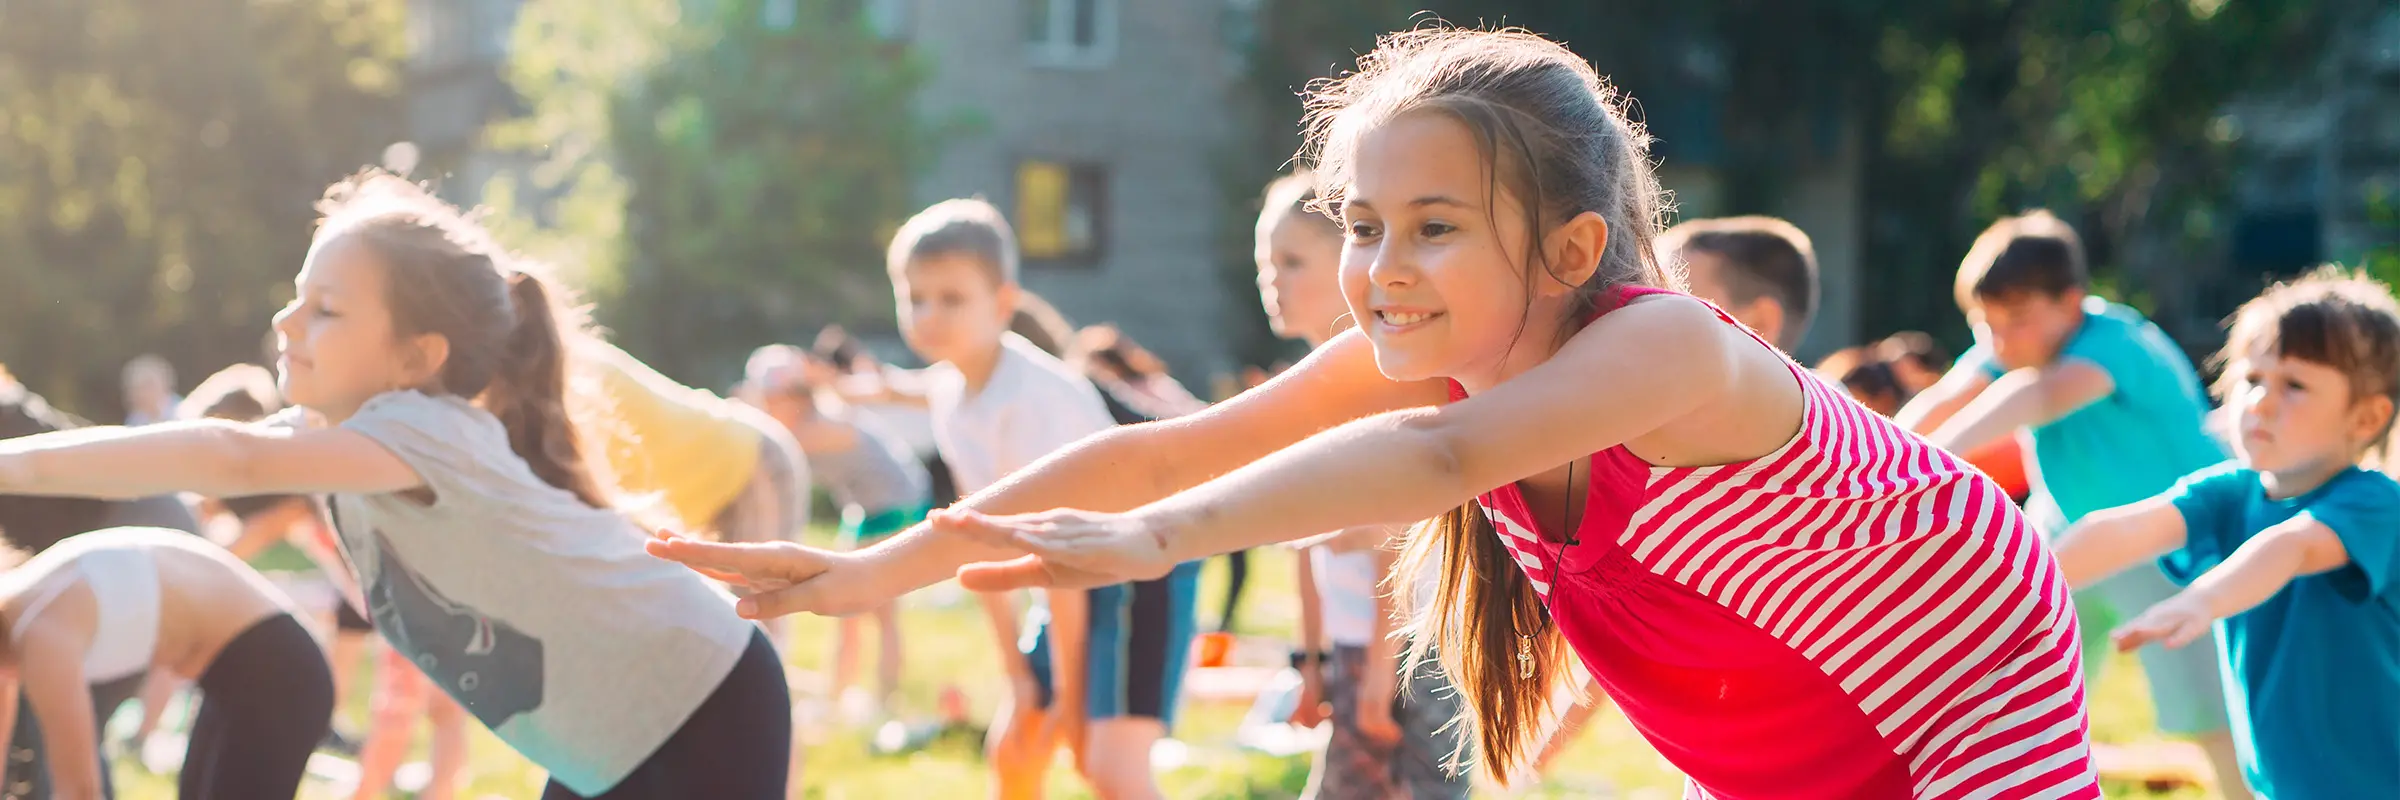 Barn som gör yoga tillsammans på en gräsmatta